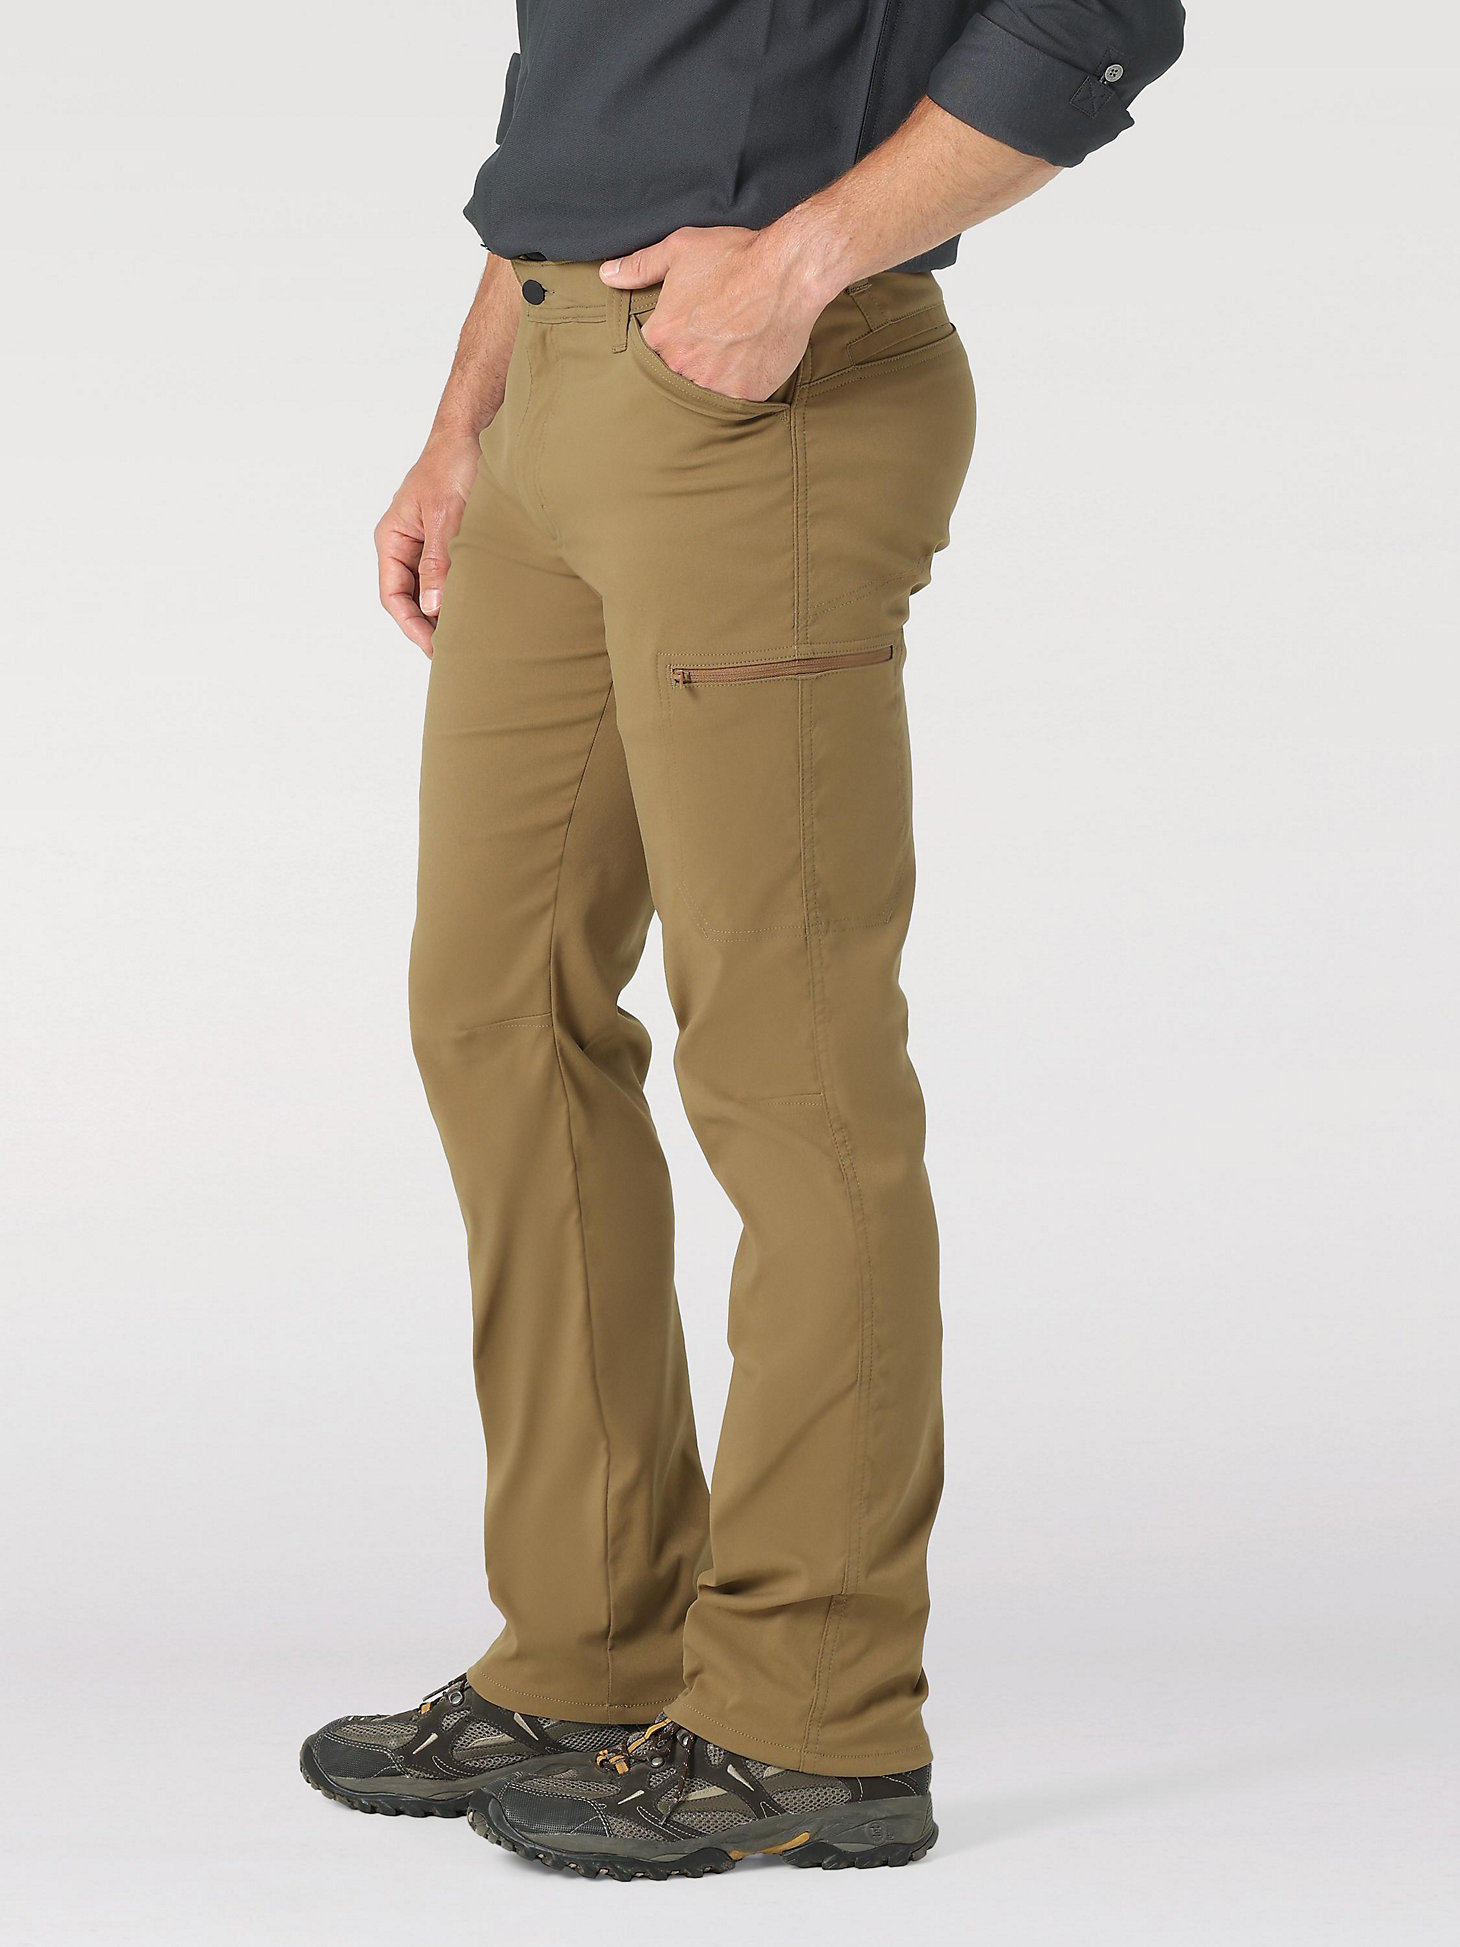 Men's Wrangler® Flex Waist Outdoor Cargo Pant in Kangaroo alternative view 3